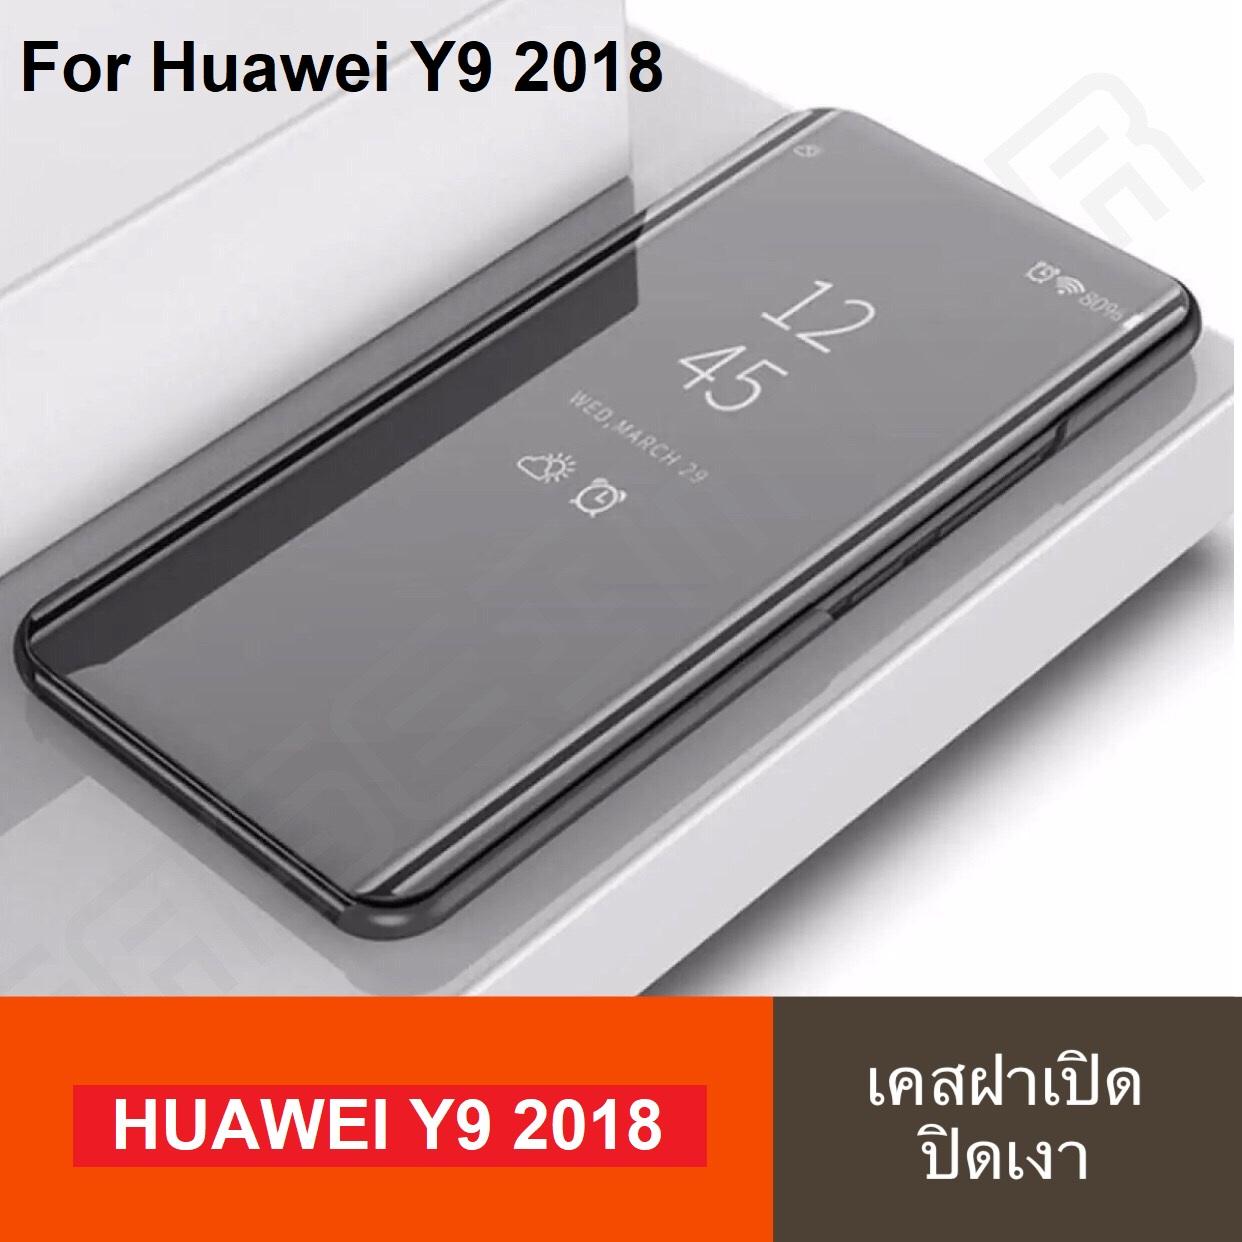 เคสเปิดปิดเงา สำหรับรุ่น Huawei Y9 2018 เคสหัวเว่ย Smart Case เคสหัวเว่ย Y9 2018 เคสกระจก เคสฝาเปิดปิดเงา สมาร์ทเคส เคสตั้งได้ Huawei Y9 2018 Sleep Flip Mirror Leather Case With Stand Holder เคสมือถือ เคสโทรศัพท์ รับประกันความพอใจ